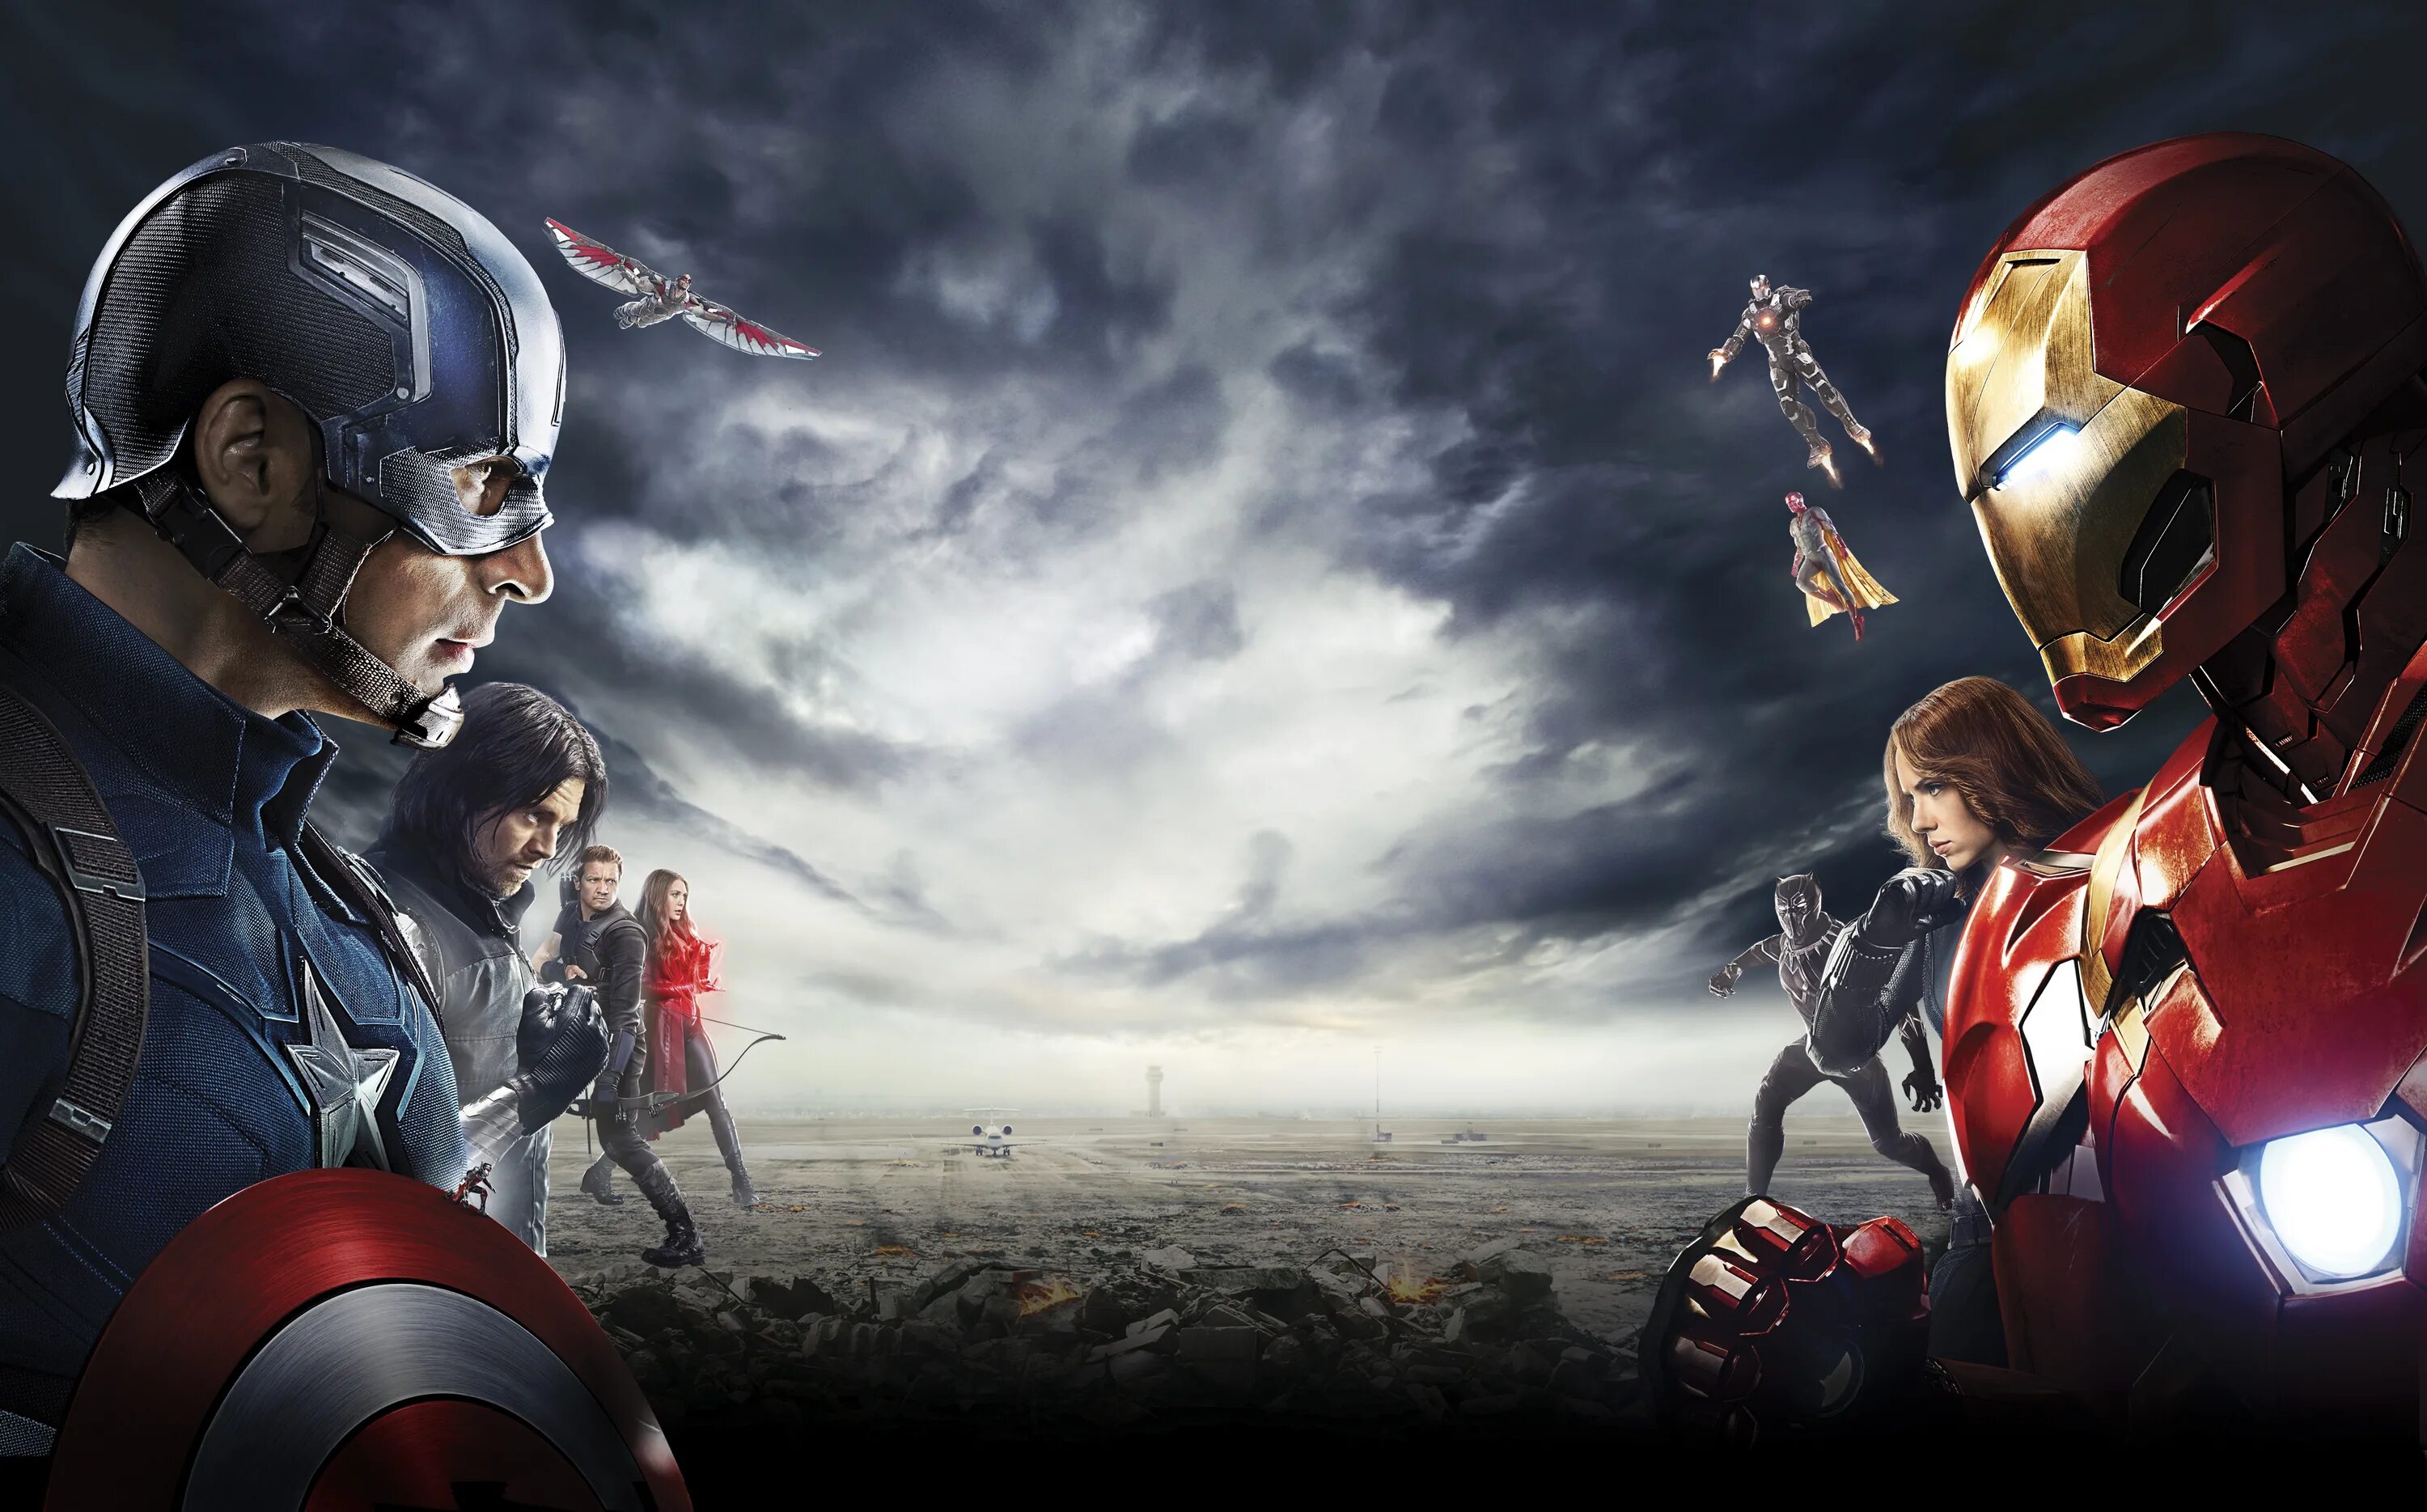 Первый мститель качество 1080. Капитан Америка первый мститель Противостояние. Первый мститель Противостояние Железный человек. Капитан Америка и Железный человек Противостояние.